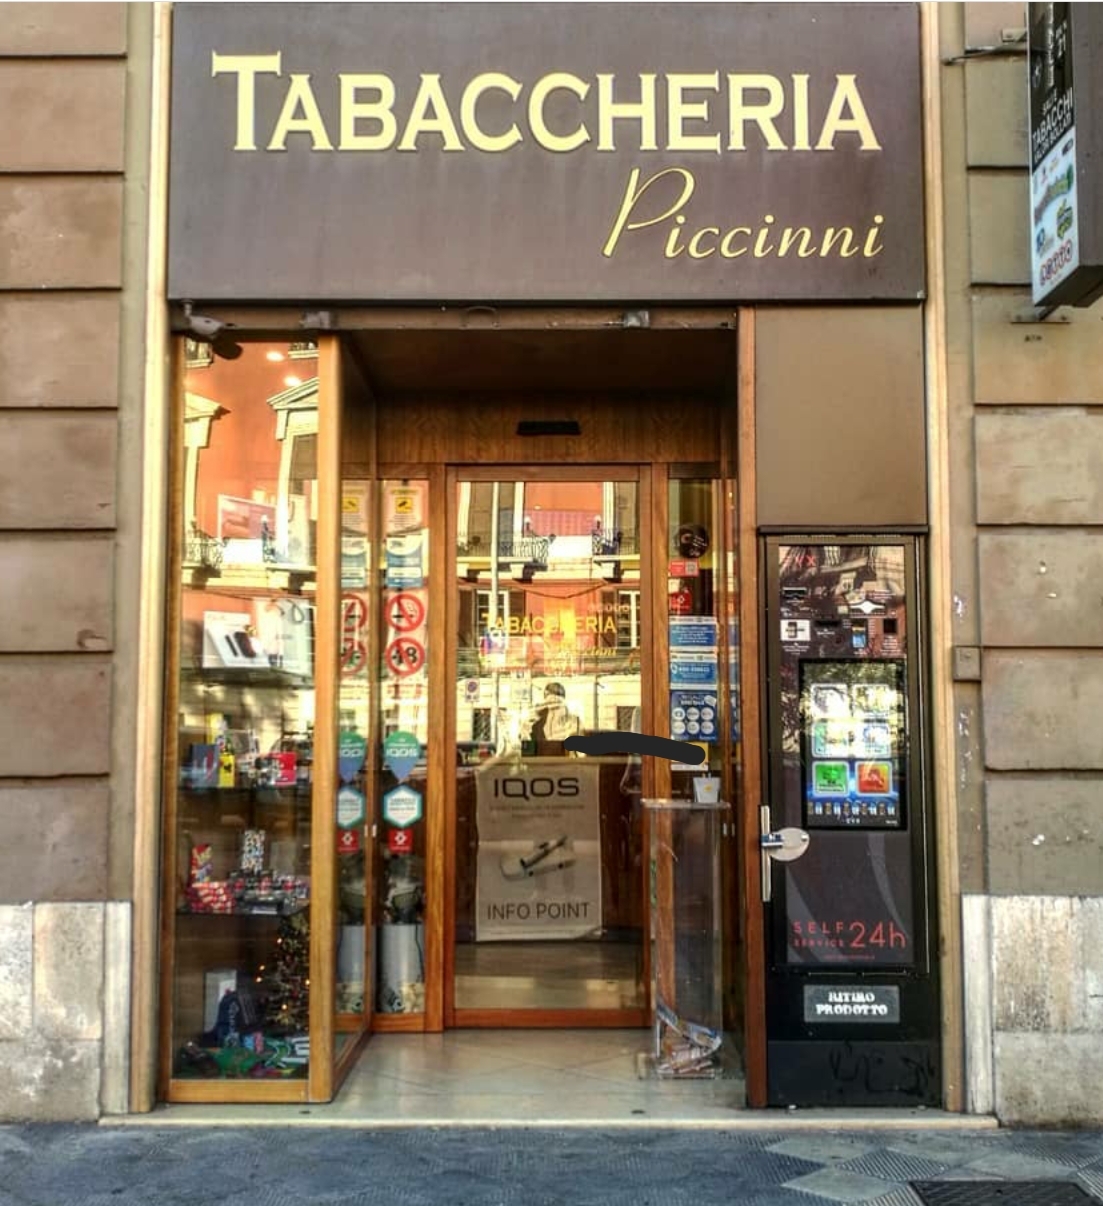 Tabaccheria Piccinni Moretti